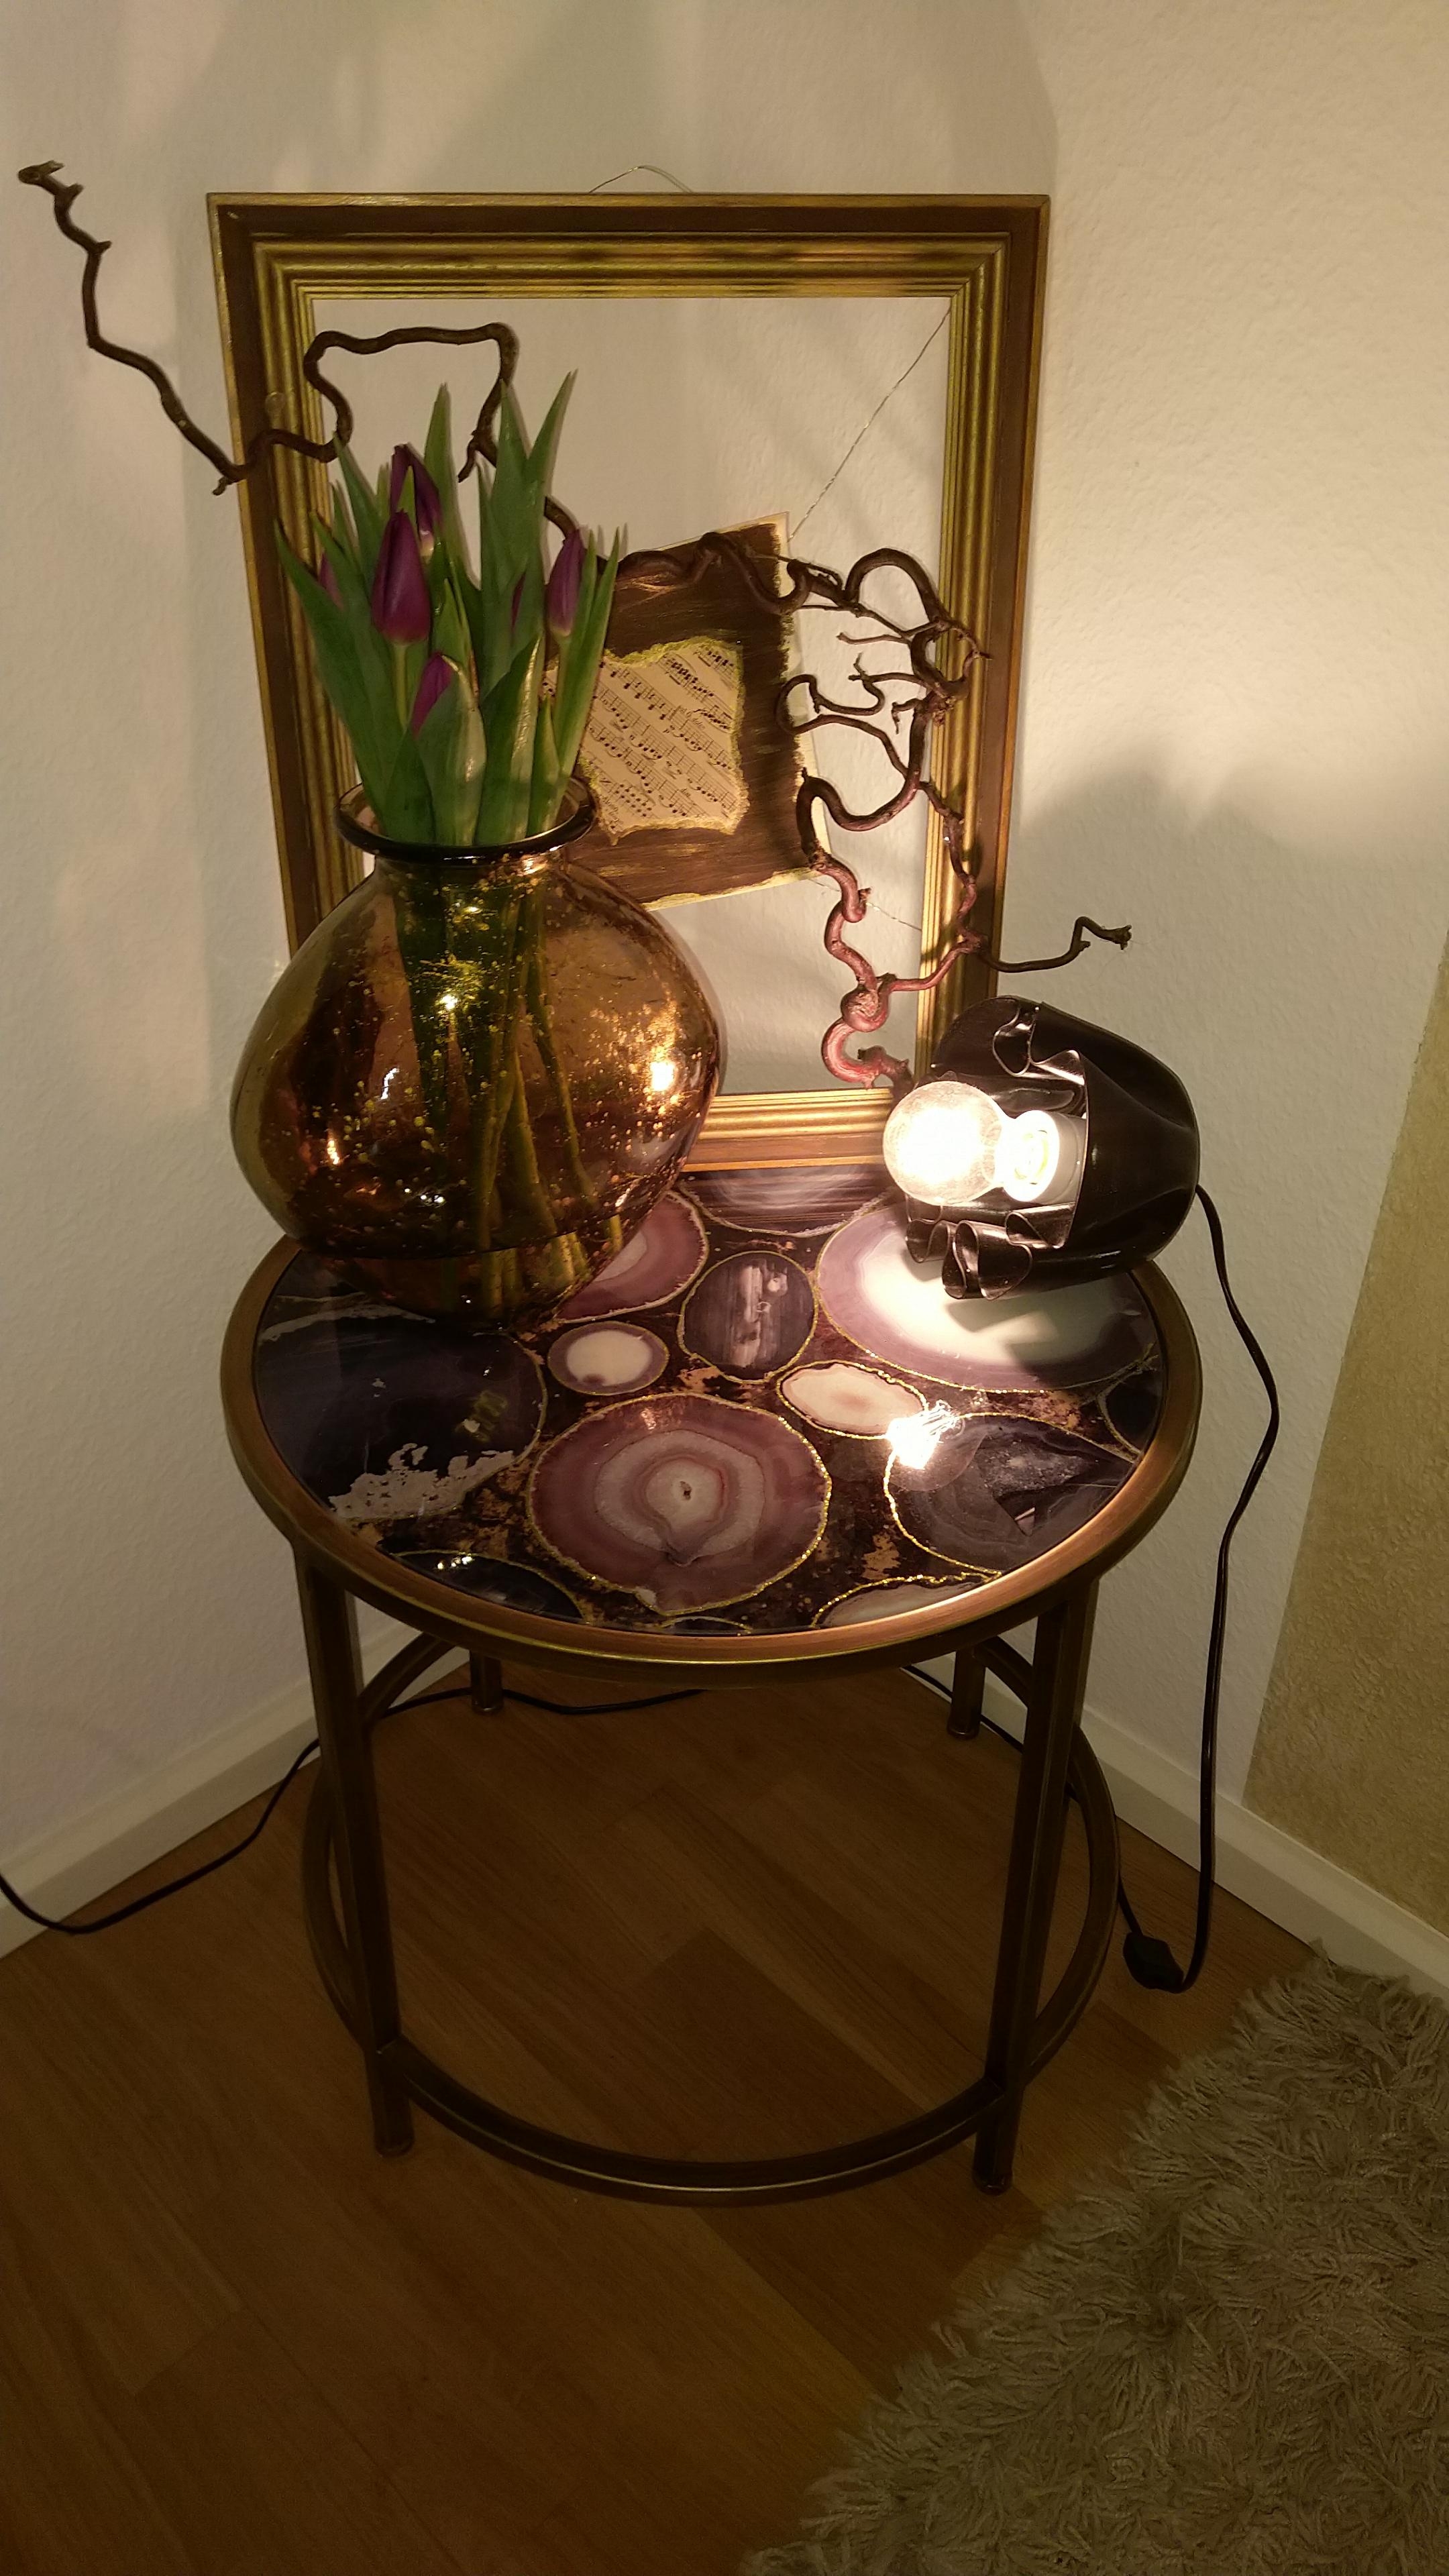 Der Frühling kommt
#achatscheiben #beistelltisch #tulpen #gold #vase #diy #lampe #bild #wohnzimmer #livingroom 